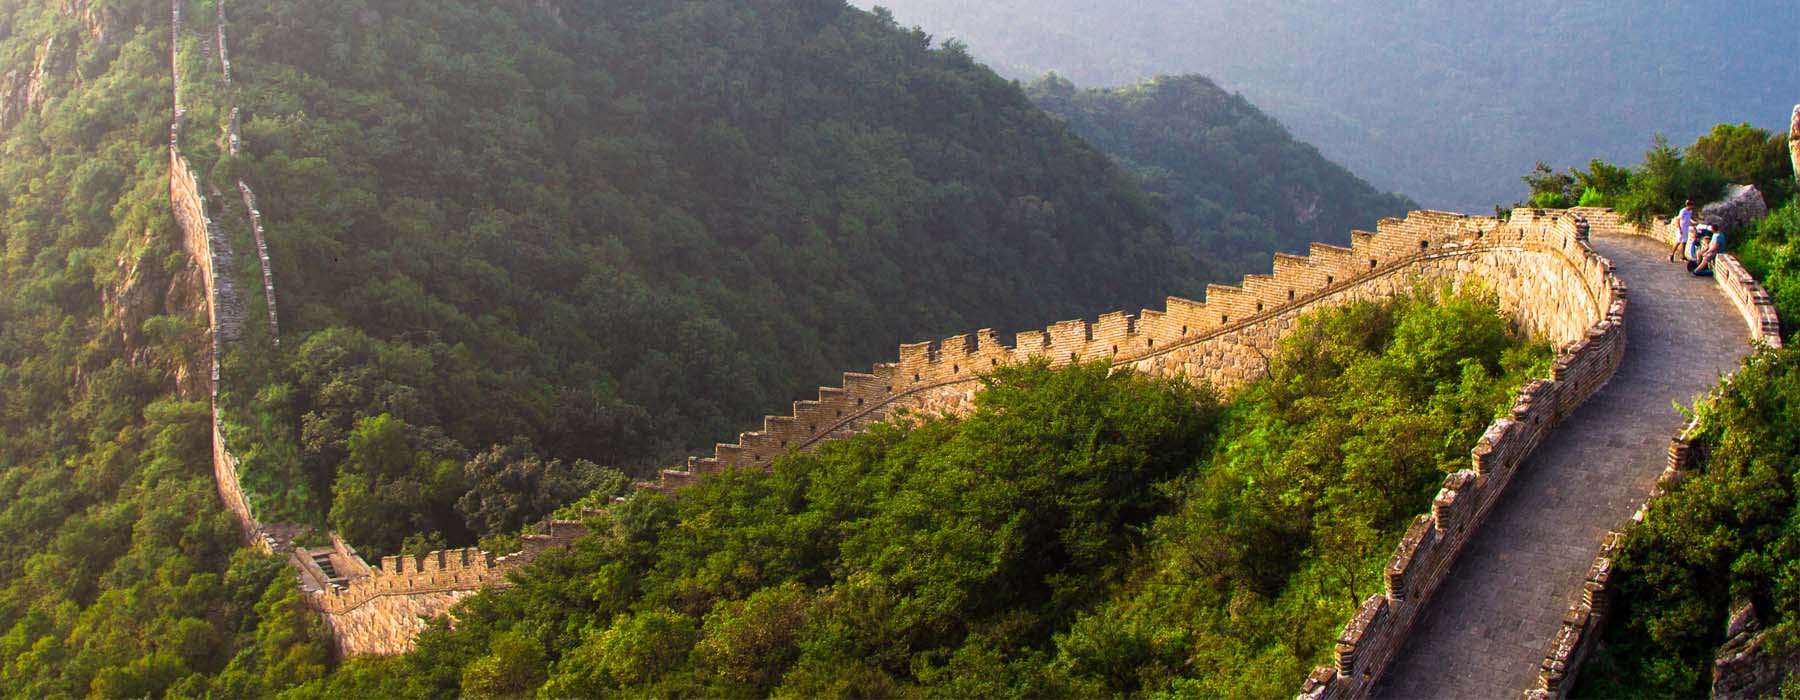 Beijing & the Great Wall<br class="hidden-md hidden-lg" /> Holidays